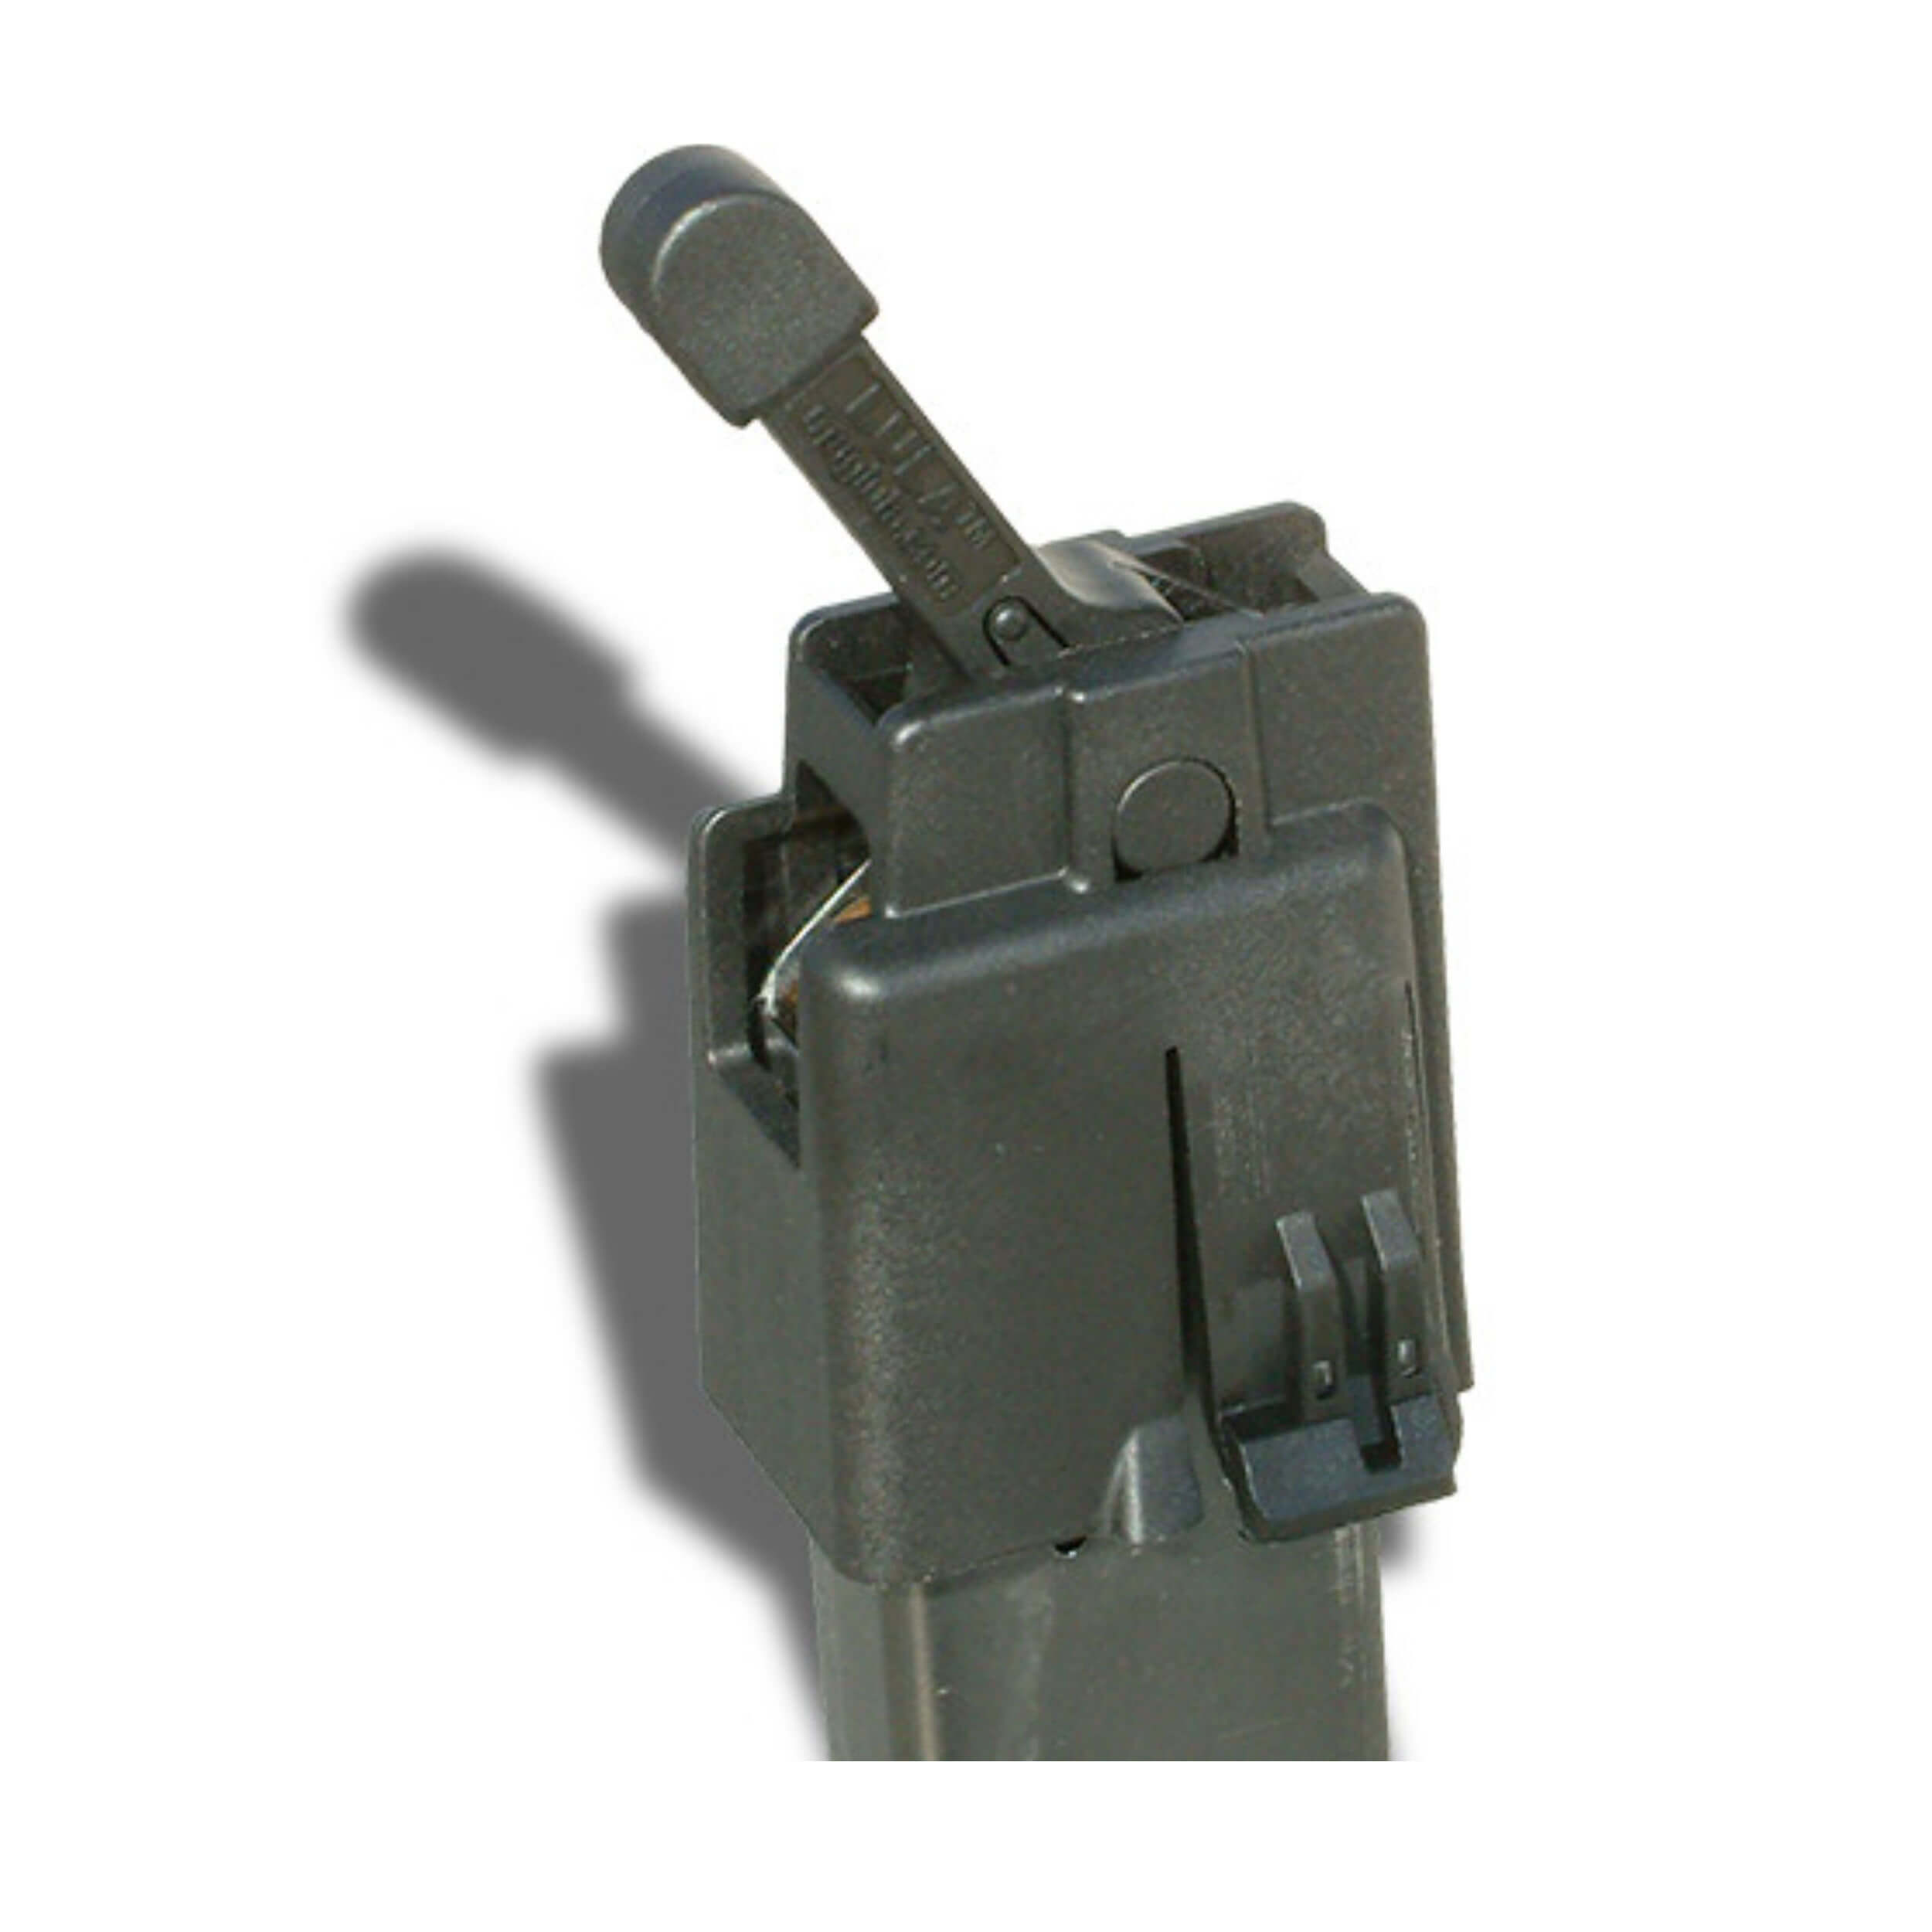 maglula® COLT SMG 9mm LULA™ loader & unloader – Black LU16B